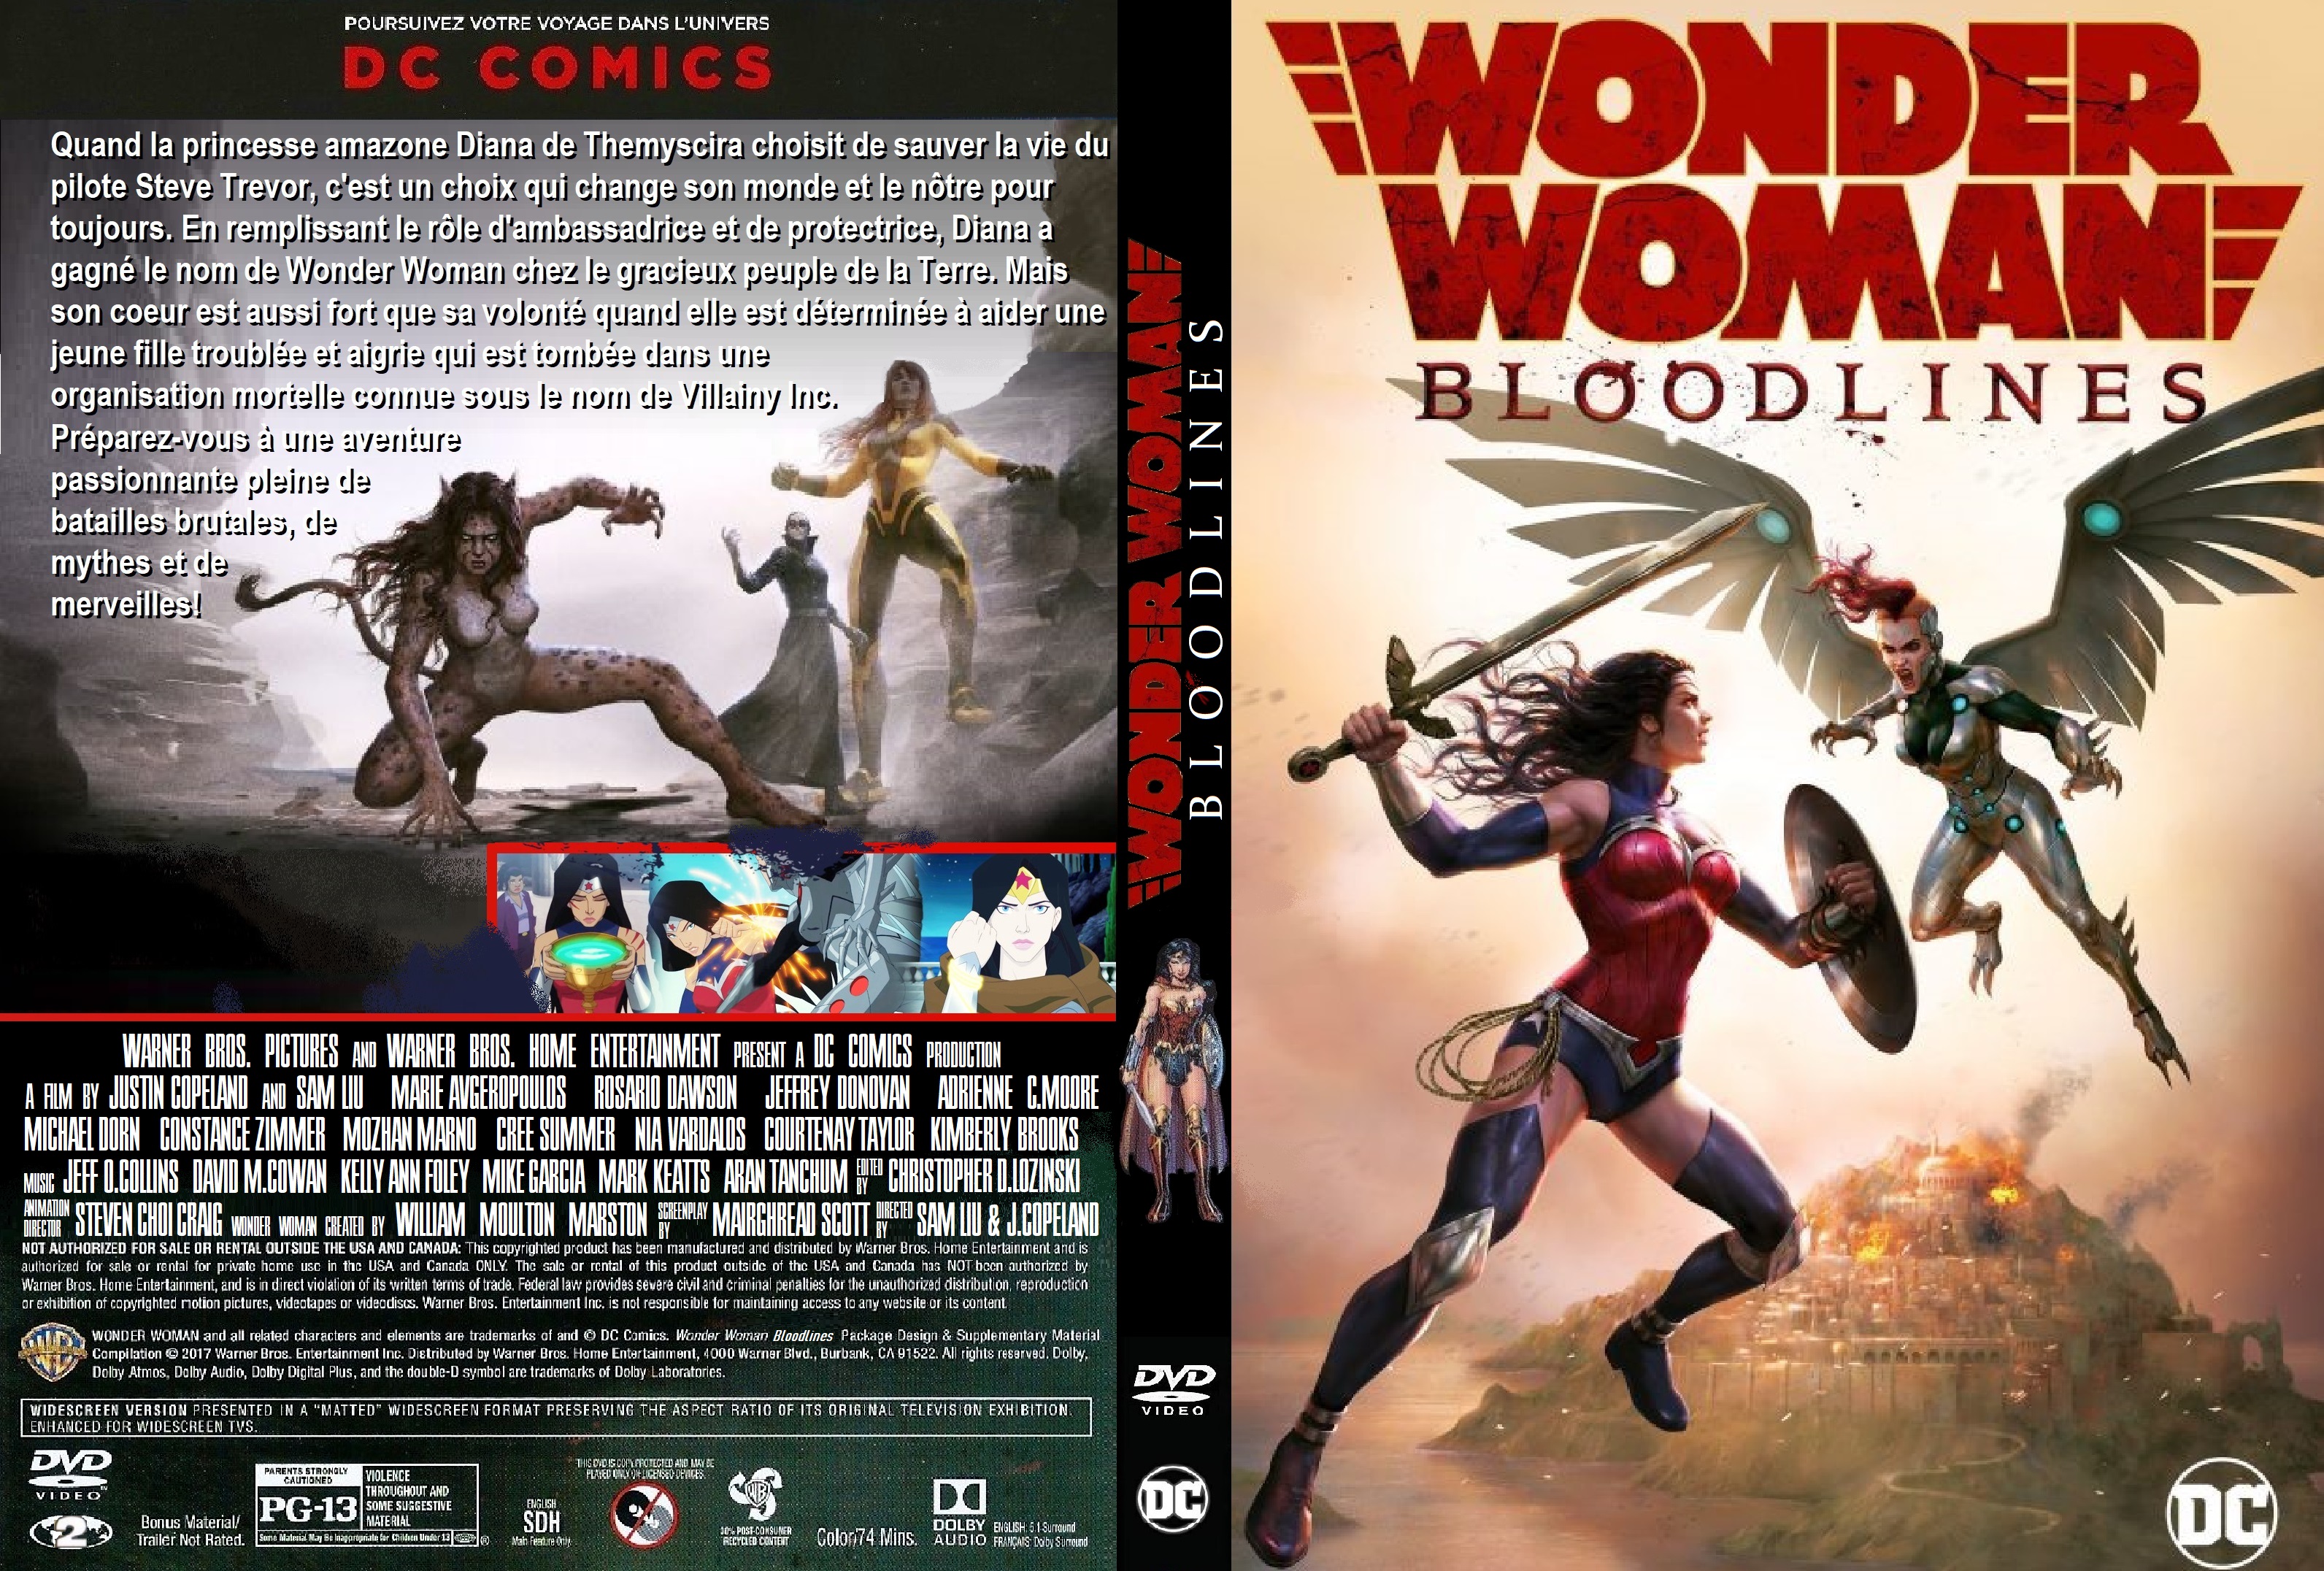 Jaquette DVD Wonder Woman Bloodlines custom v2